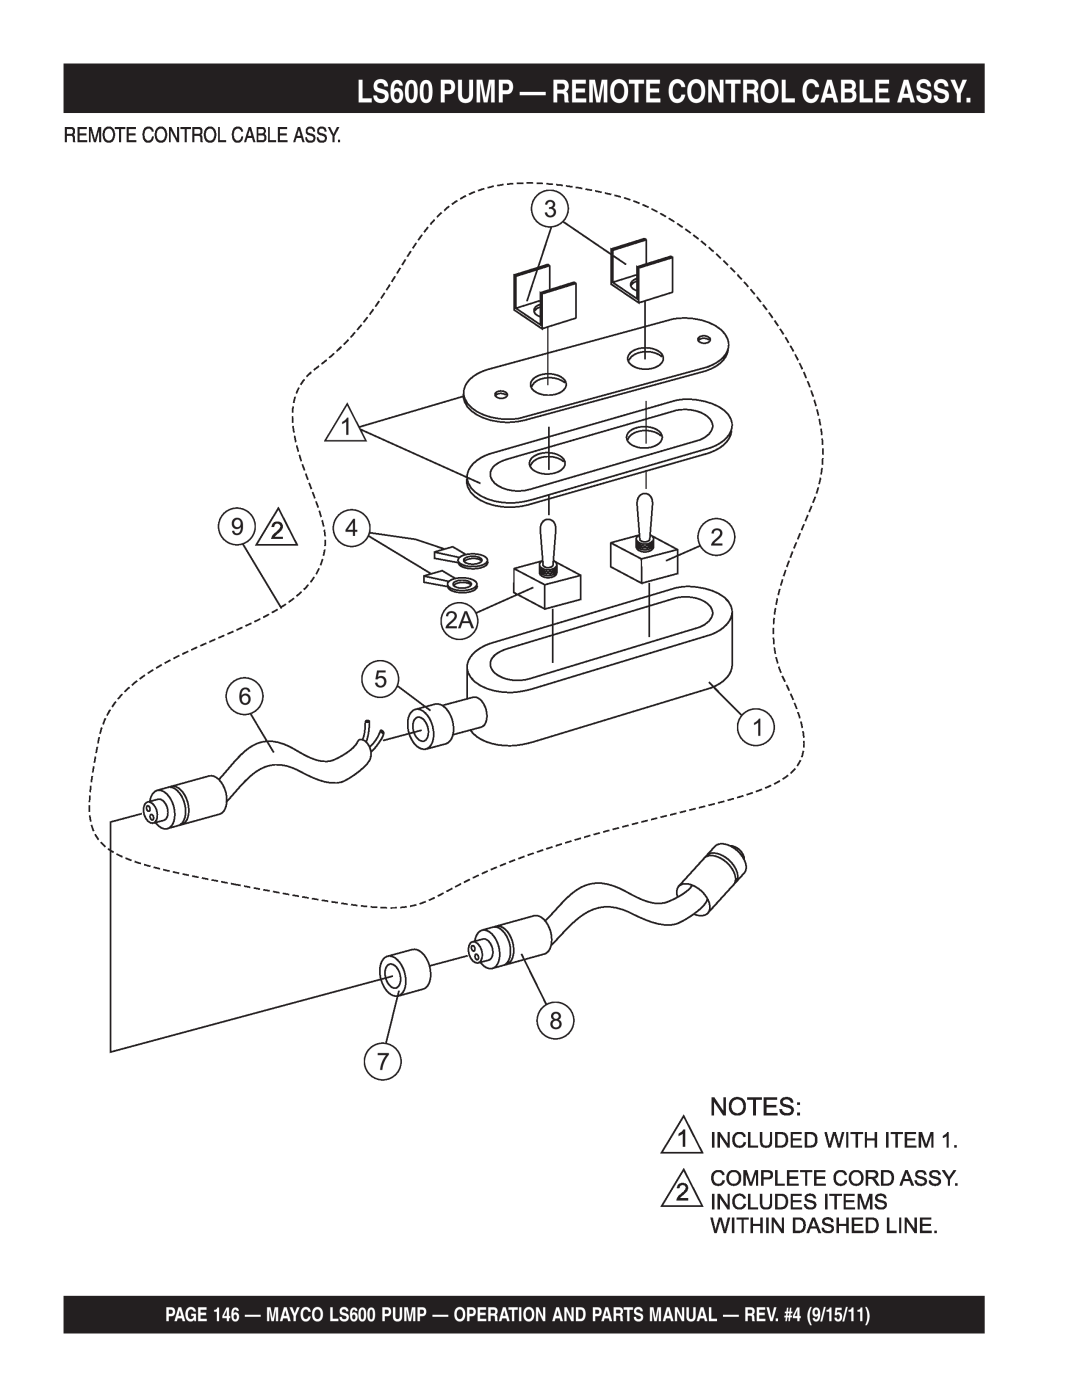 Multiquip manual LS600 PUMP — REMOTE CONTROL CABLE ASSY, Remote Control Cable Assy 